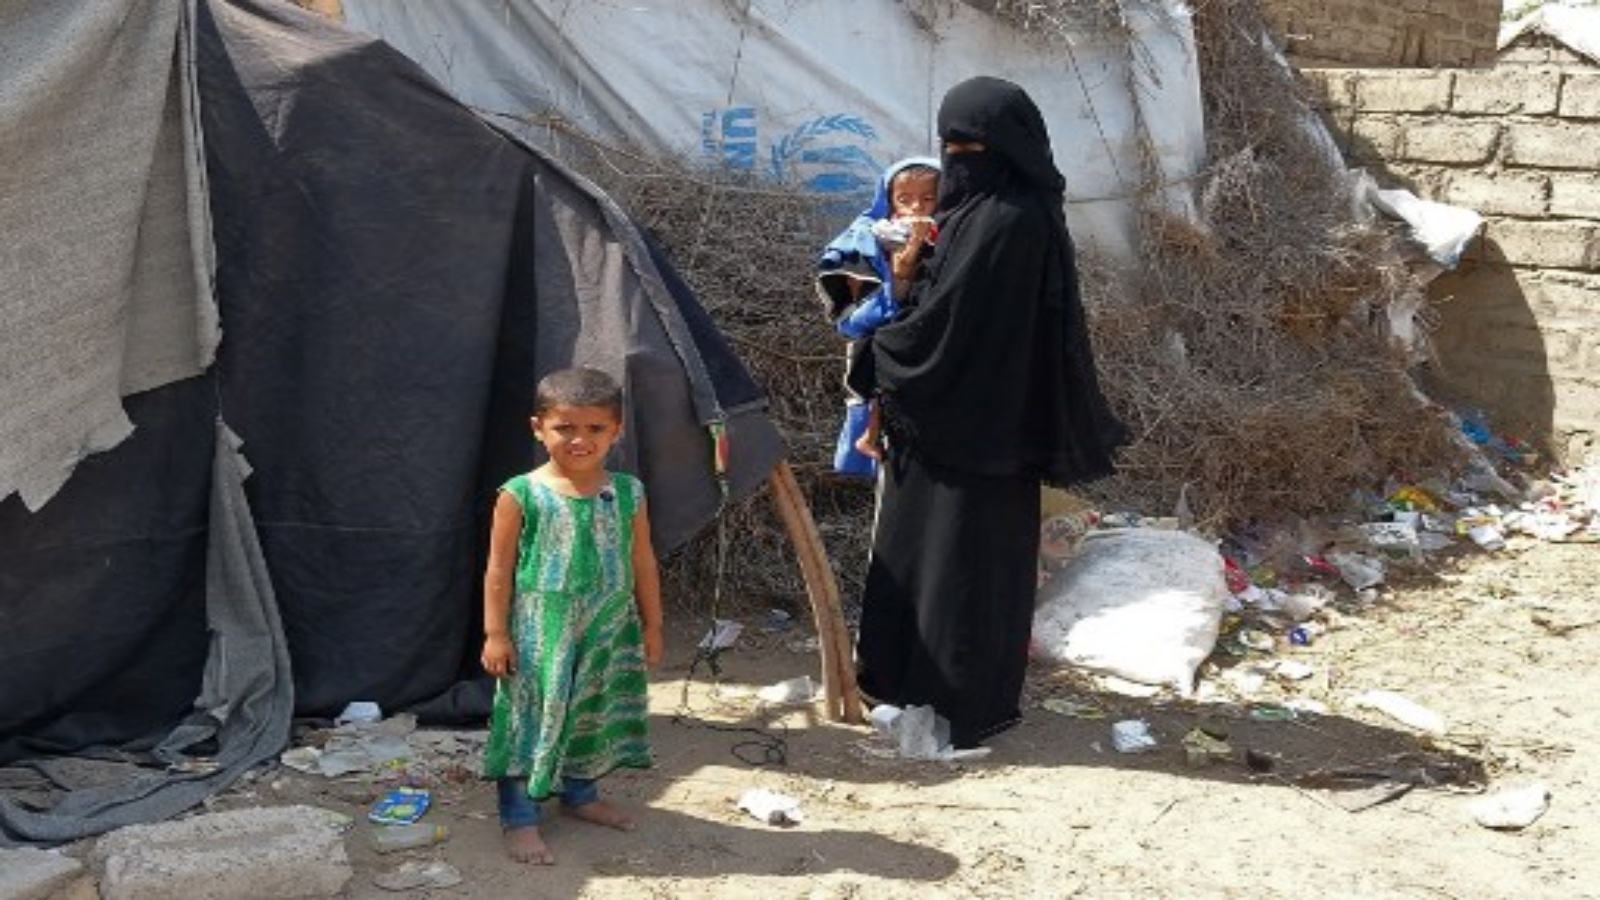 امرأة يمنية نزحت بسبب النزاع تحمل ابنها البالغ من العمر عامين وثمانية أشهر ، ويزن خمسة كيلوغرامات فقط ، بينما تنتظر خارج مأوى للنازحين في محافظة الحديدة الغربية التي مزقتها الحرب ، في 15 فبراير 2021.